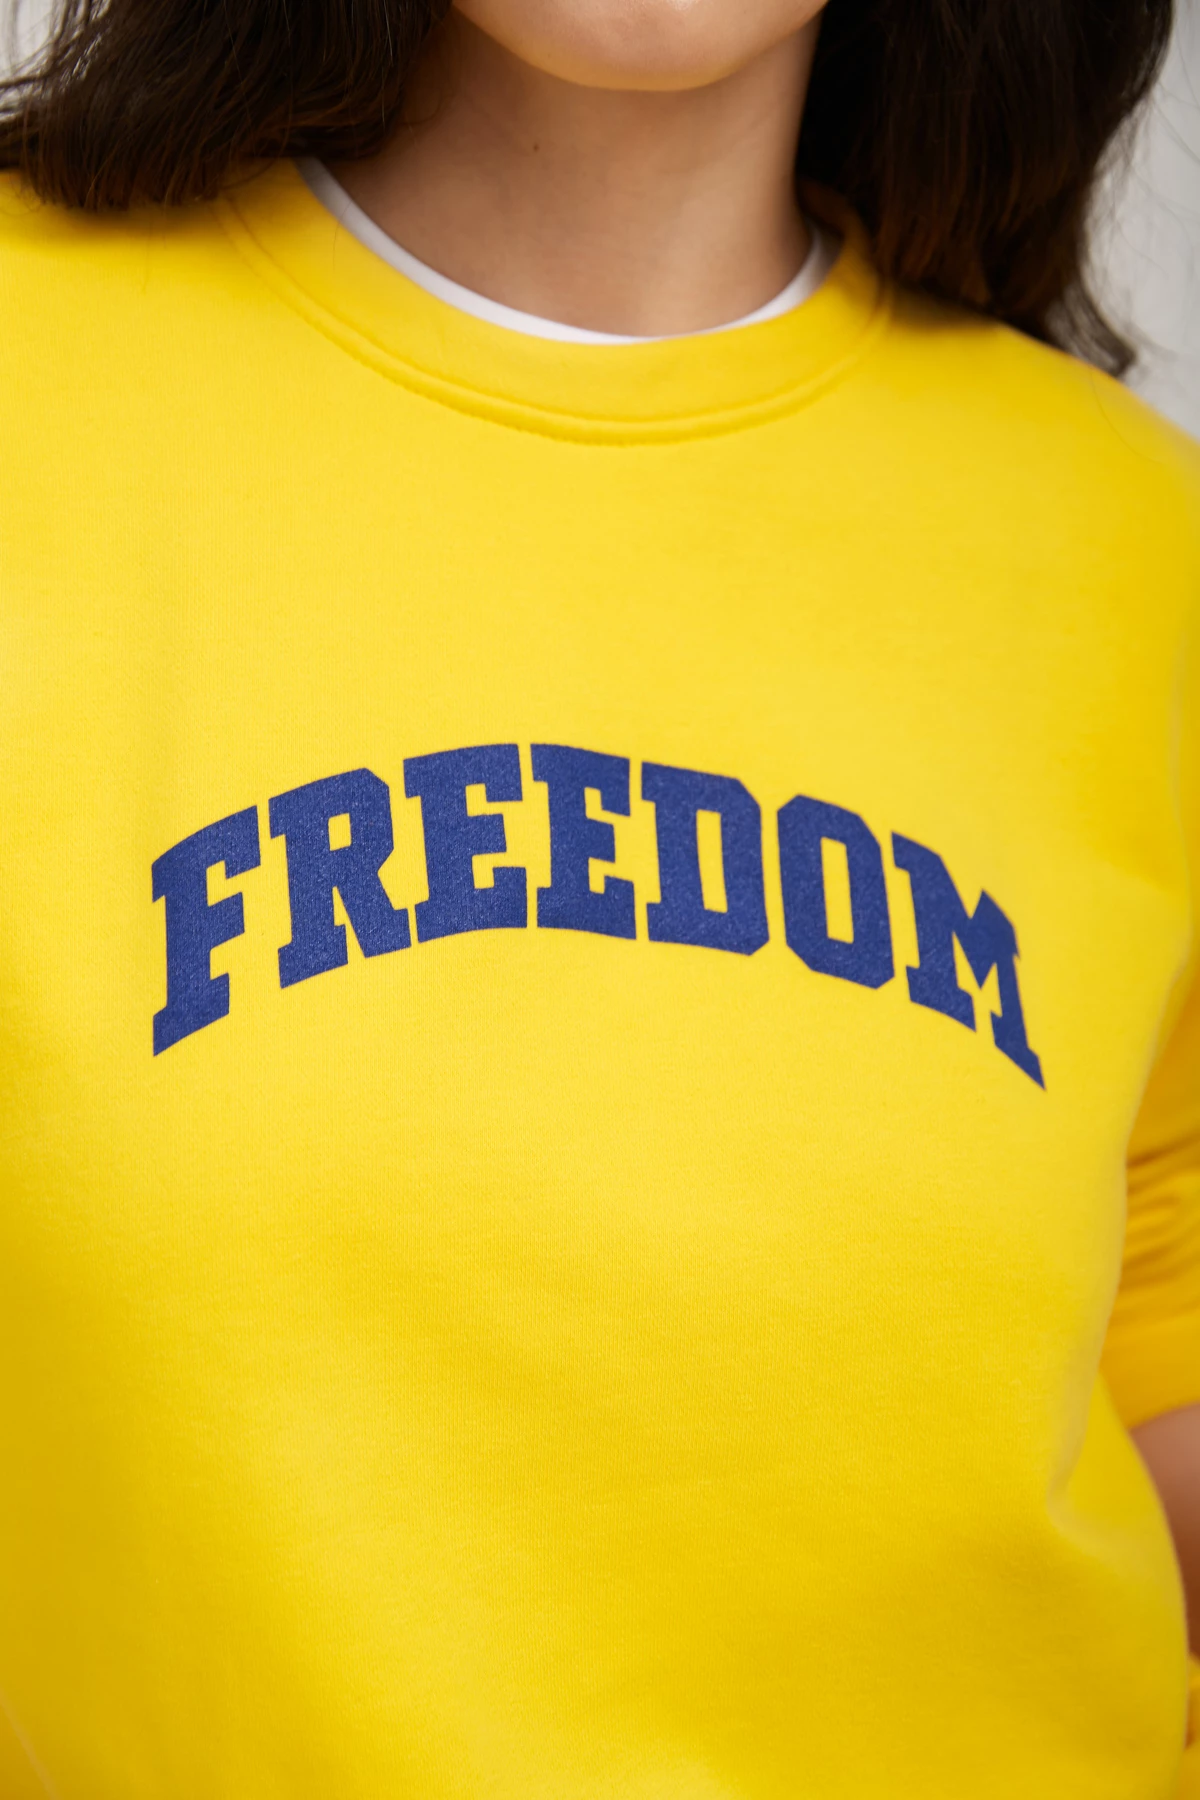 Жёлтый трикотажный свитшот с принтом "Freedom", фото 2